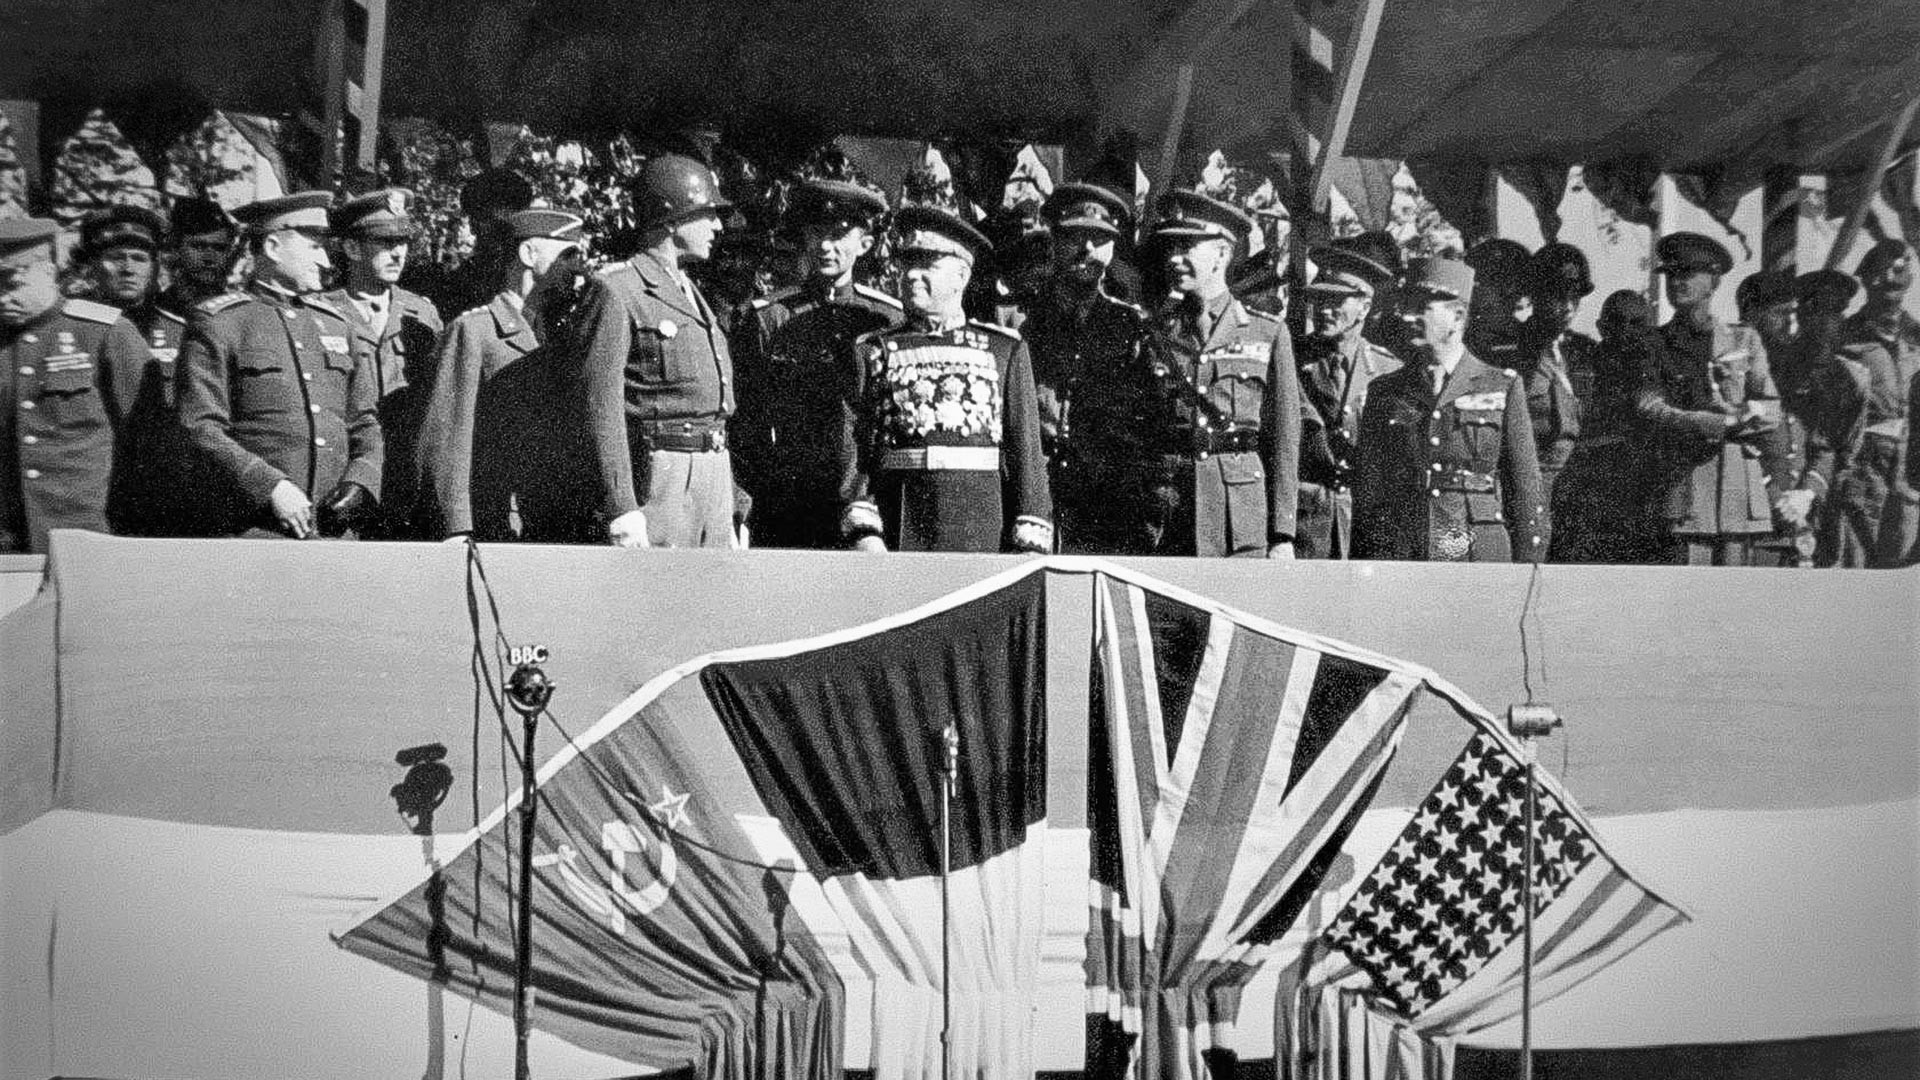 Diễu binh quân Đồng Minh năm 1945 - Diễu binh quân Đồng Minh năm 1945 được xem như một trong những sự kiện quan trọng trong lịch sử thế giới. Đây là thời điểm các quốc gia đồng minh đã hợp sức để chống lại những thế lực thù địch. Hãy xem qua những hình ảnh liên quan đến sự kiện này và tìm hiểu thêm về lịch sử thế giới.